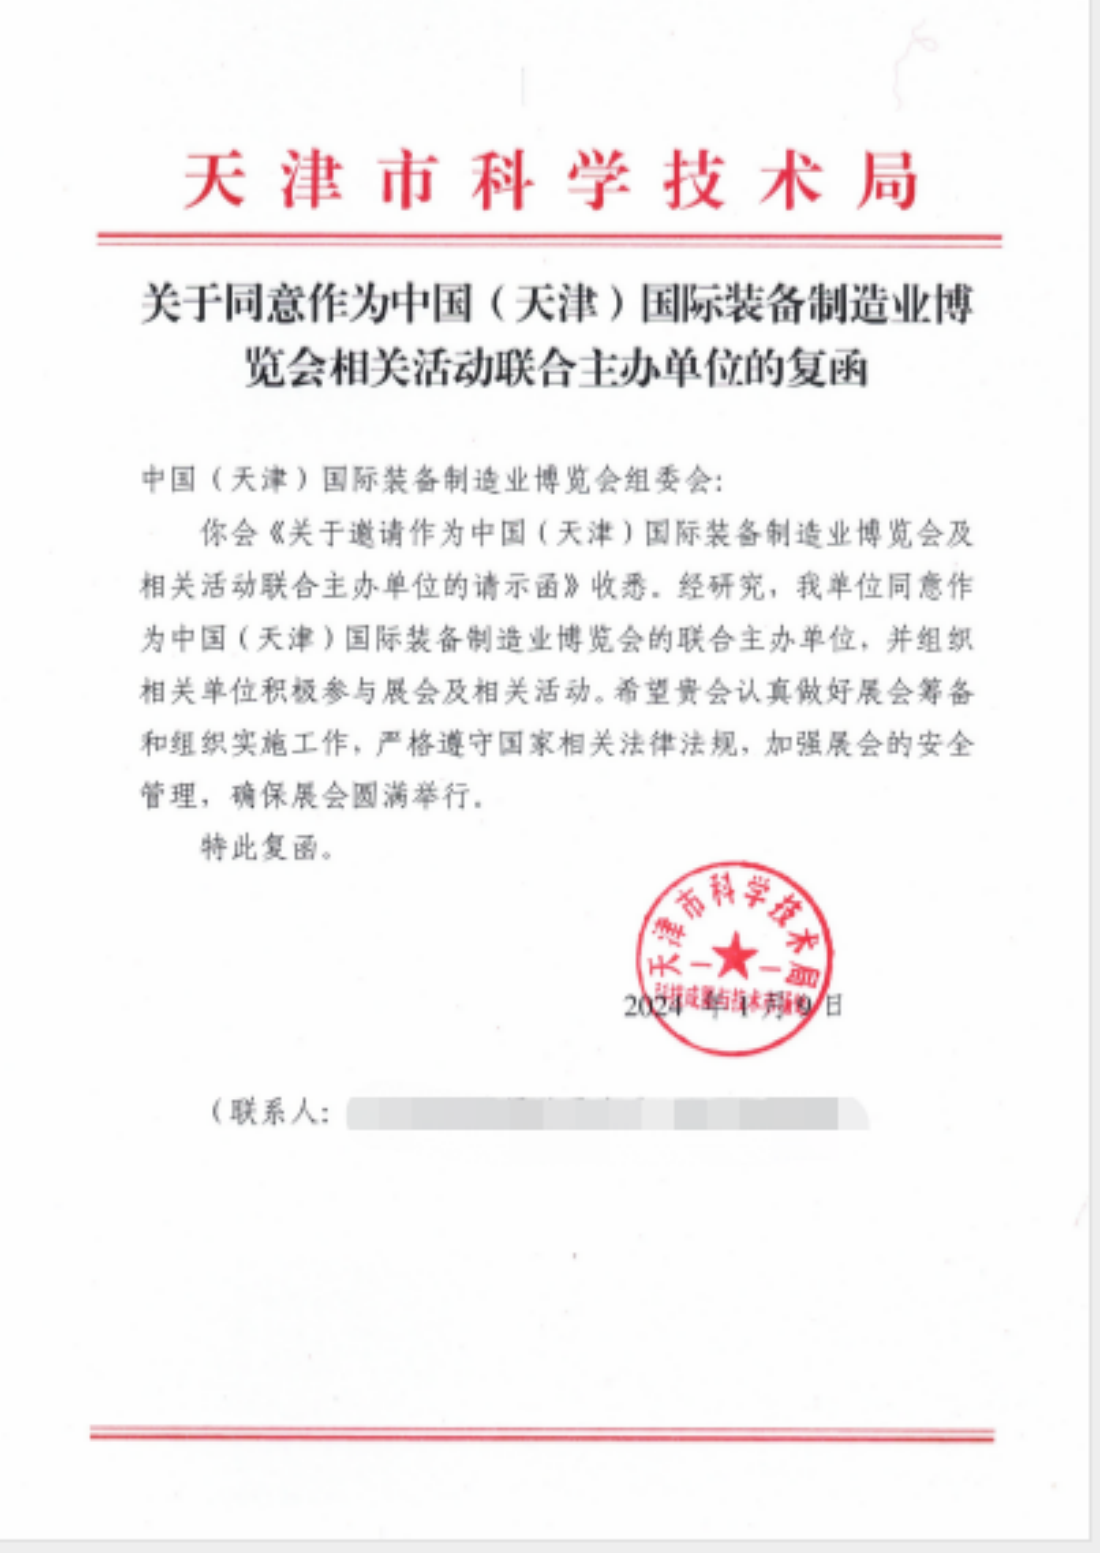 主办升级丨天津工博会新增3大联合主办单位 多家支持单位_环球最资讯